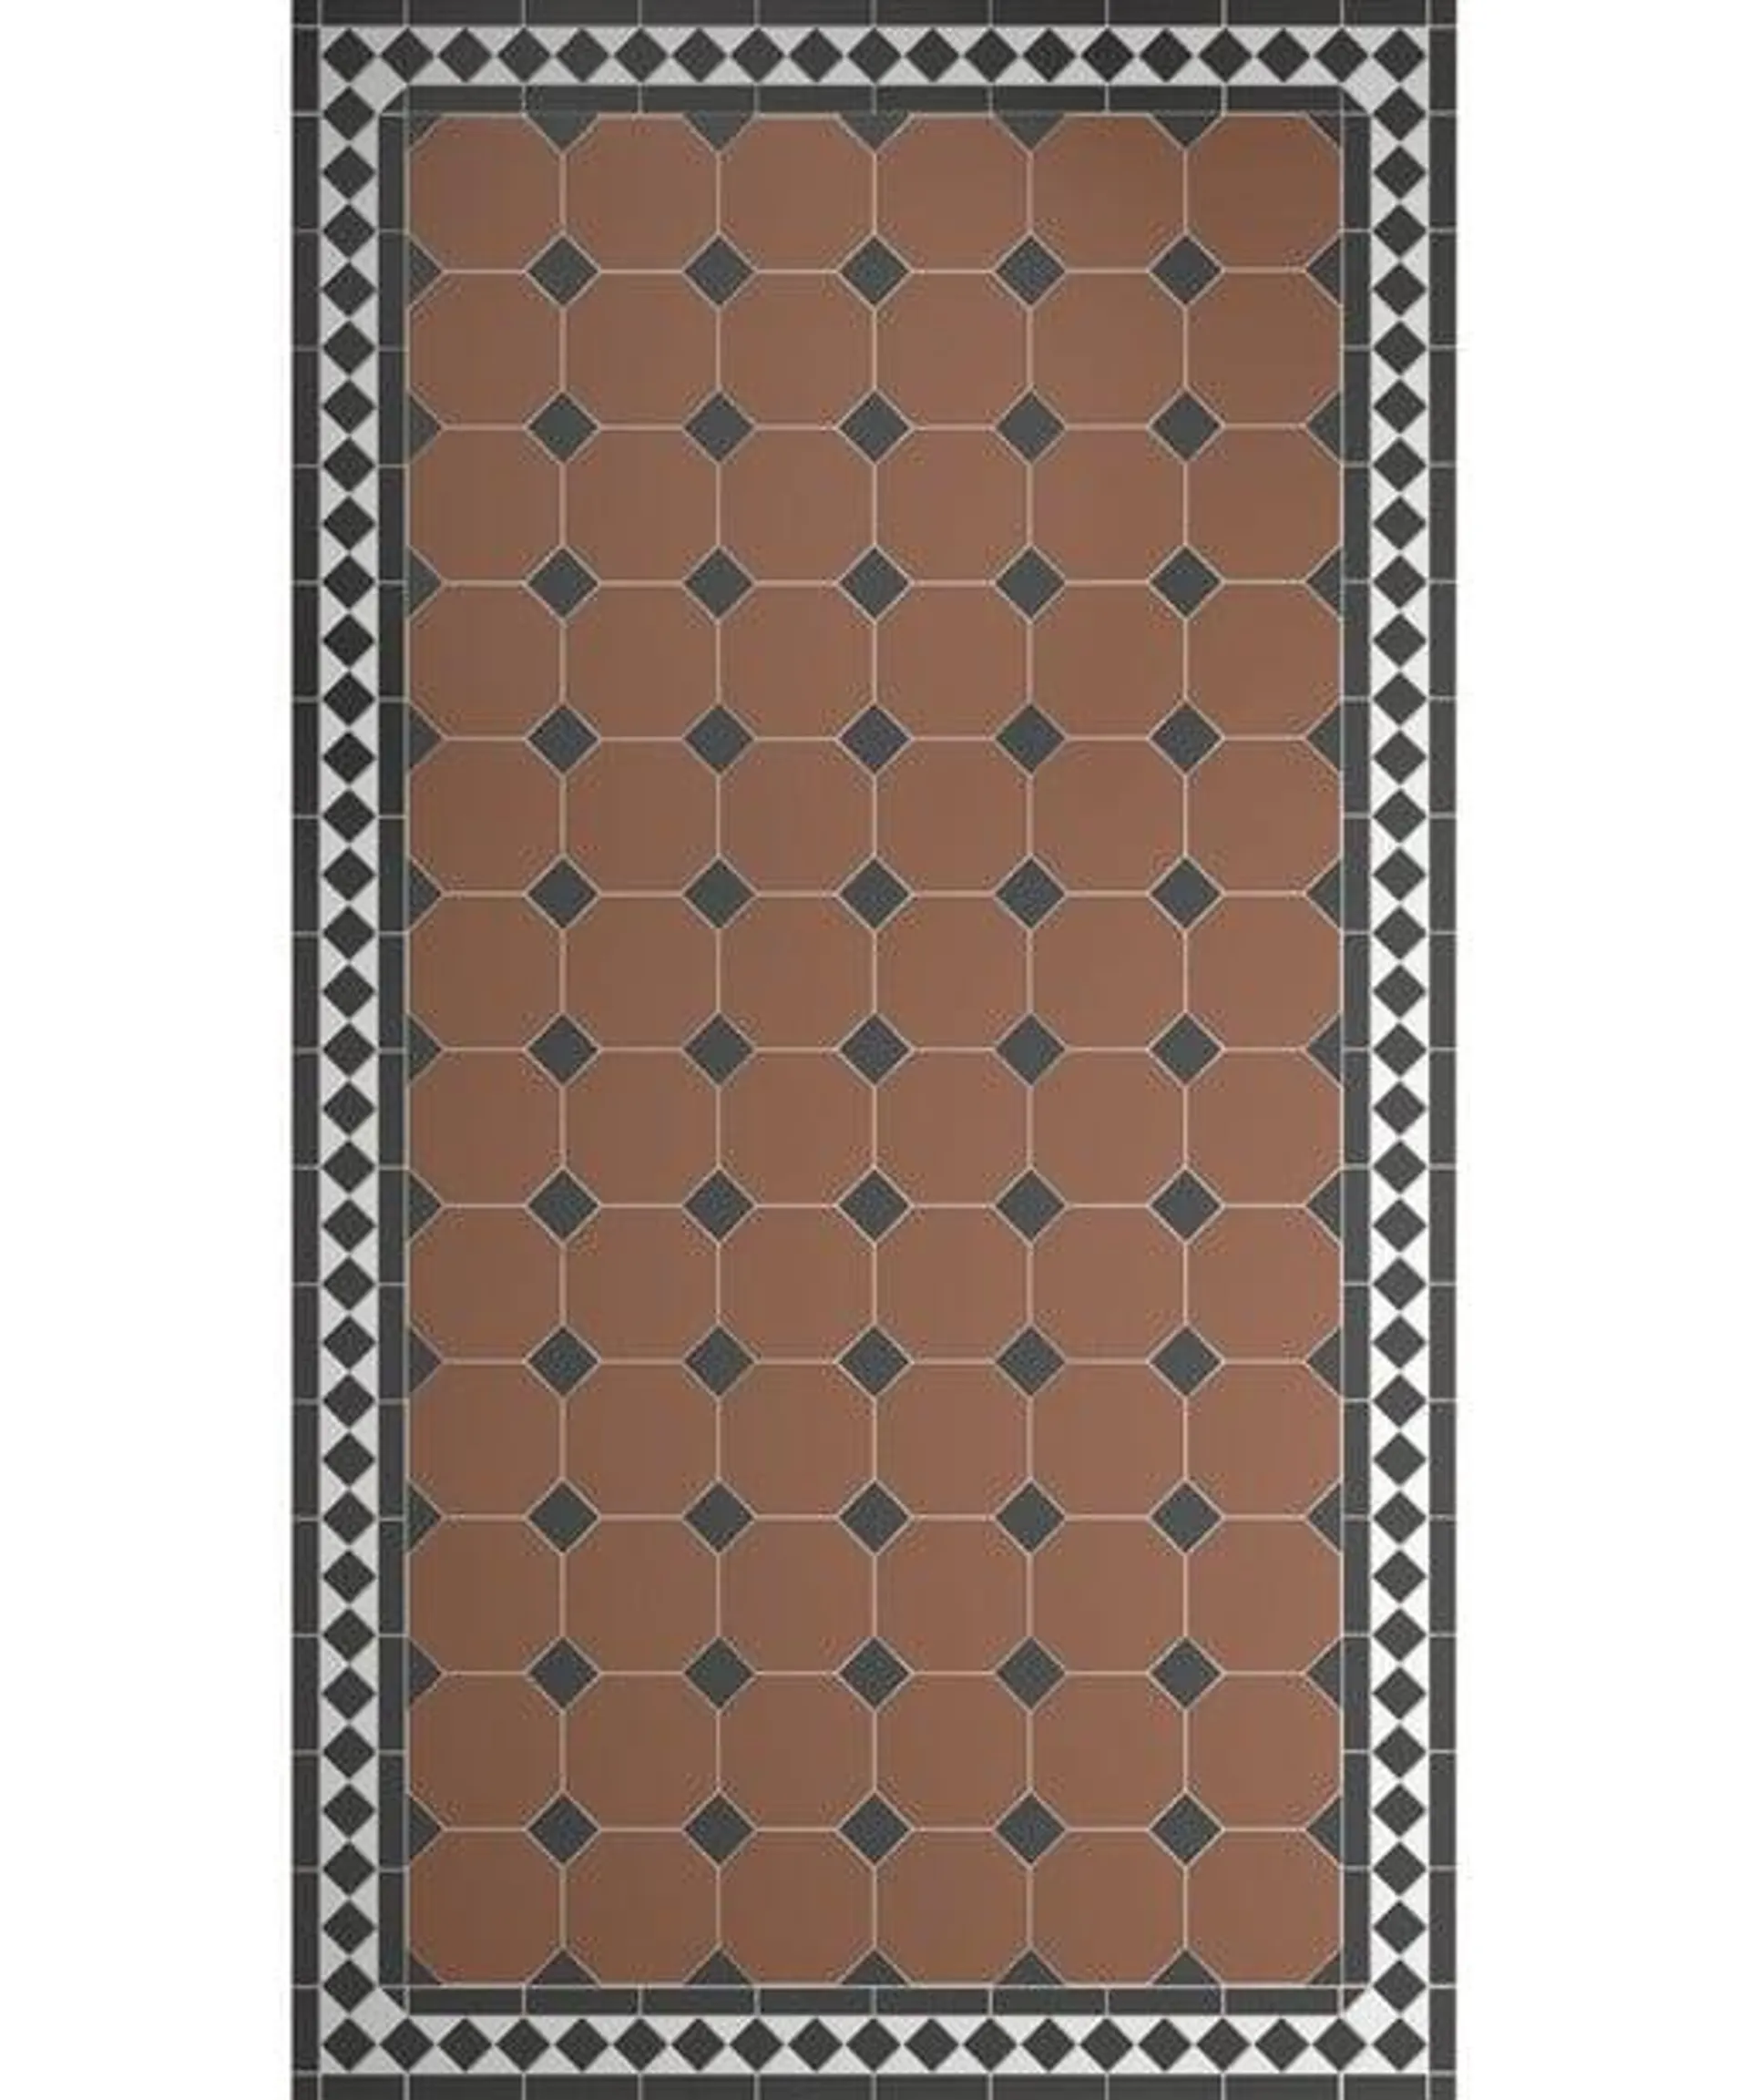 Victorian Flooring™ Diamond Border Tile